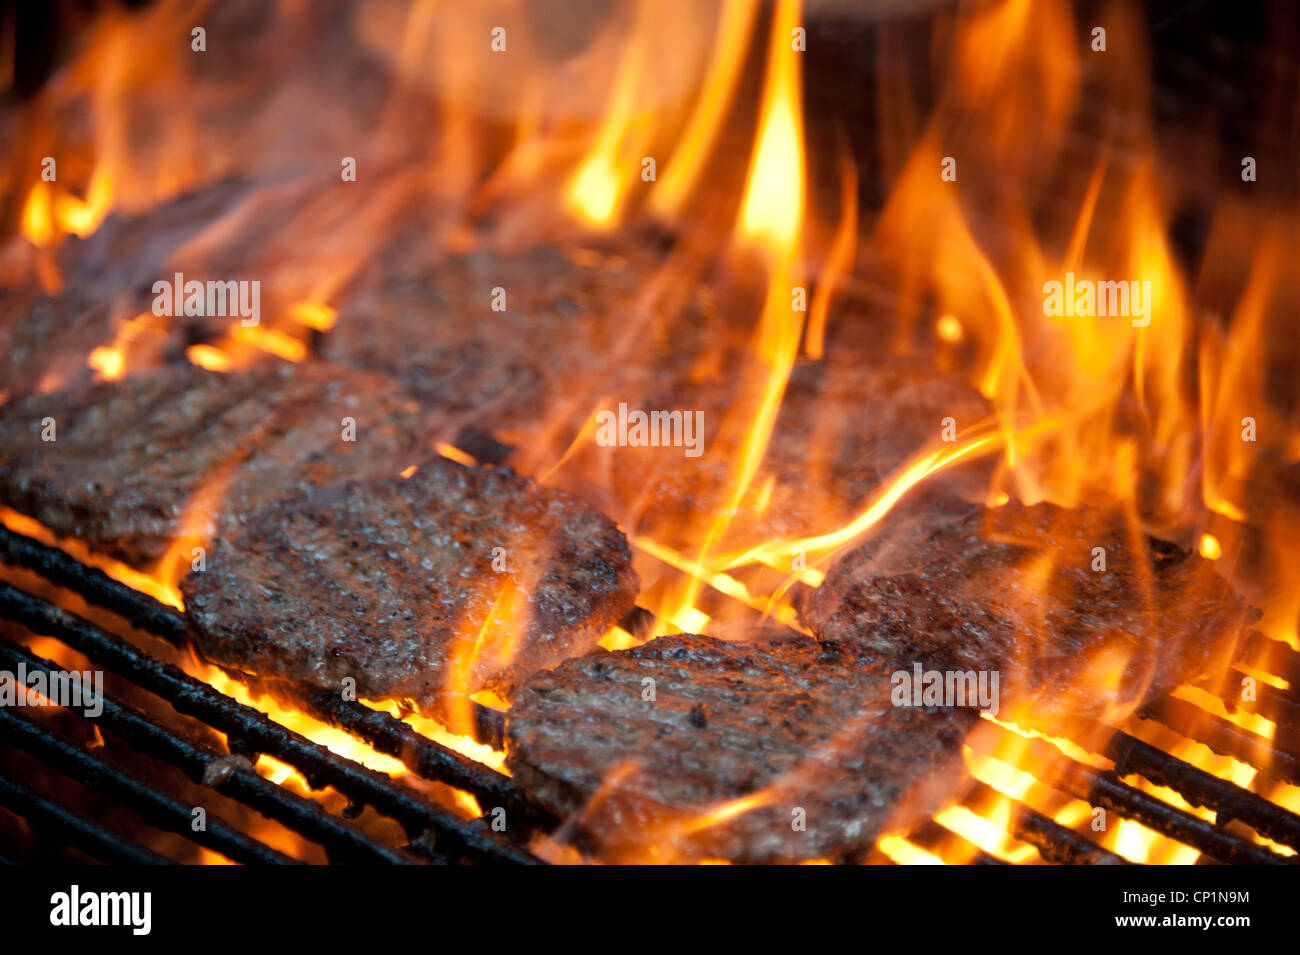 Gli hamburger sul grill avvolto in fiamme Foto Stock